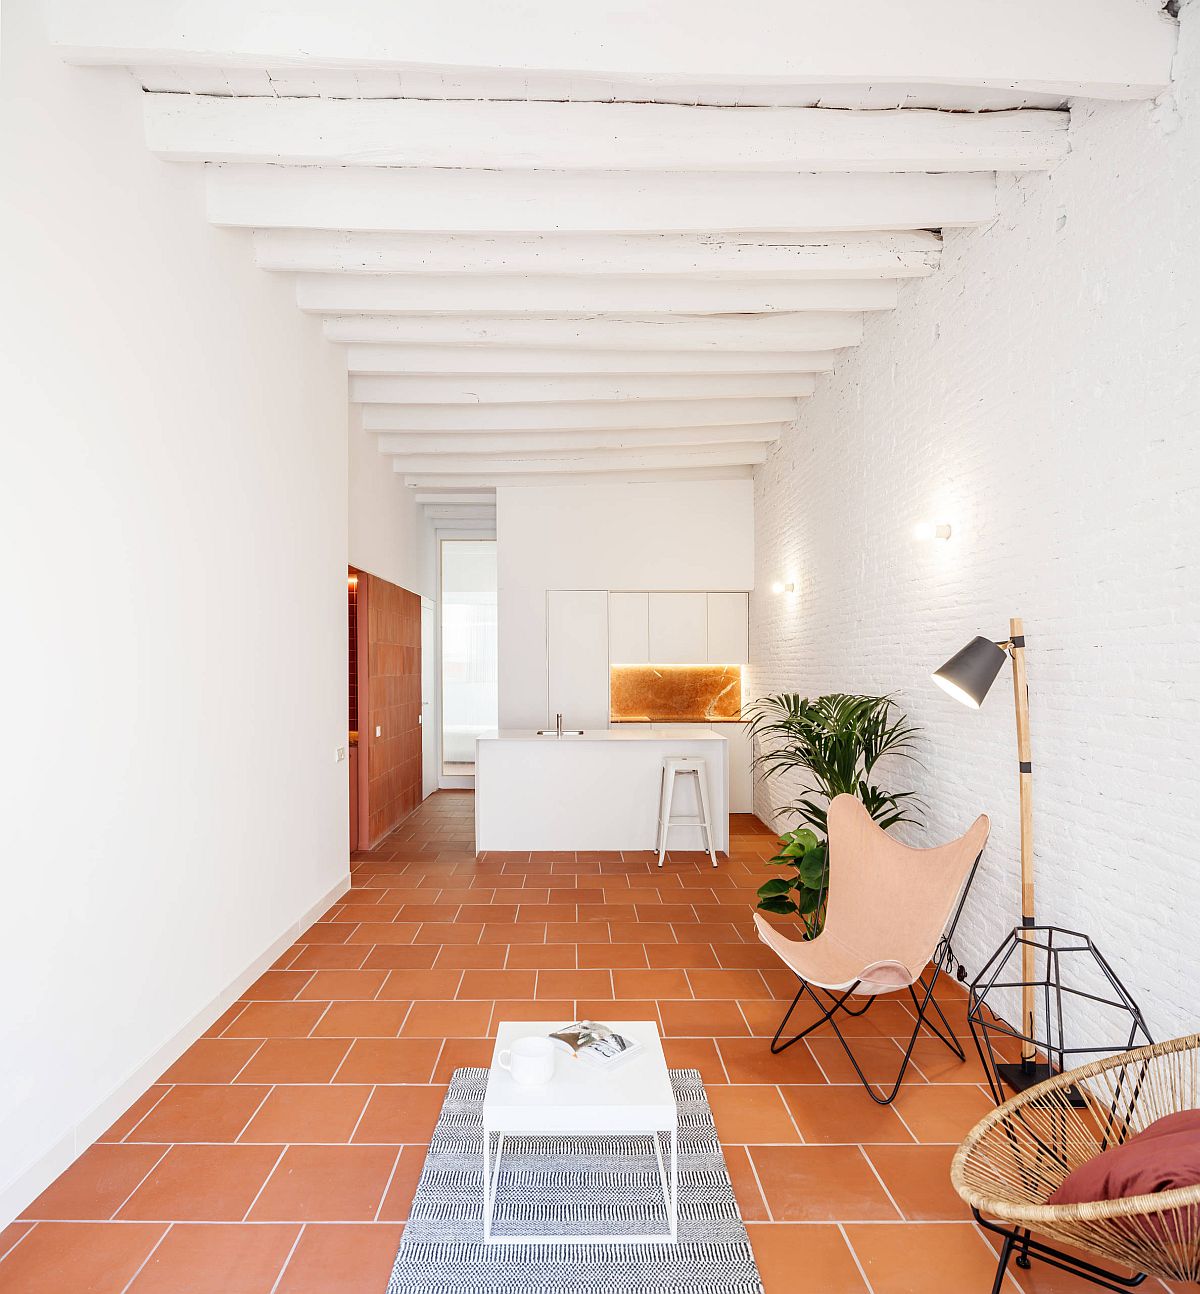 Phòng khách dài và hẹp của một căn hộ tại Barcelona (Tây Ban Nha) với tường gạch trắng và sàn gạch đất nung. Nếu sắc trắng chủ đạo dễ gây cảm giác lạnh lẽo thì chủ nhân đã khéo léo dùng sàn đất nung để “sưởi ấm” không gian.